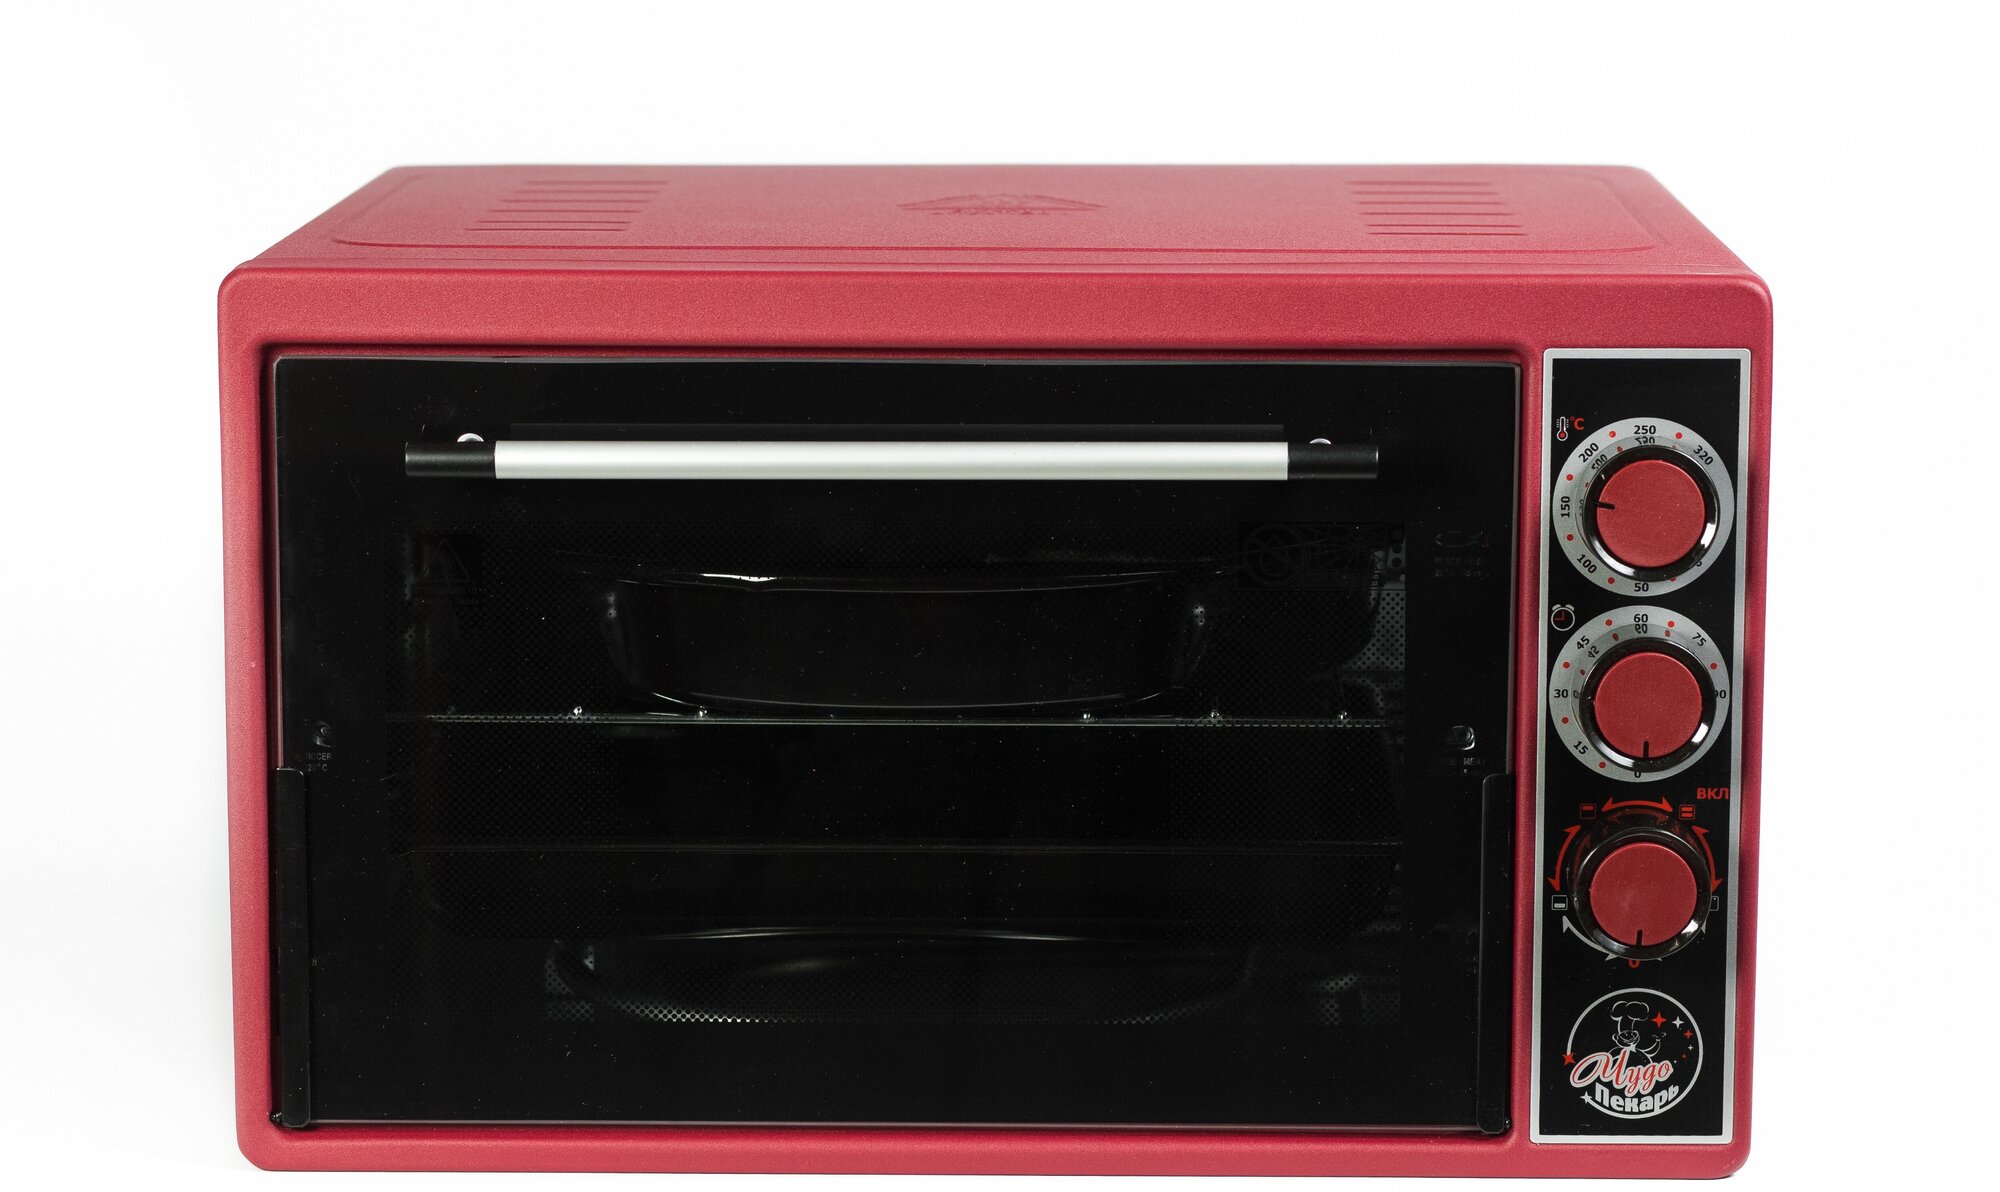 Мини-печь "чудо пекарь" ЭДБ-0124/духовка электрическая настольная (цвет красный, 39 л, 1 противень, толстый нержавеющий ТЭН повышенной мощности, таймер, гриль, терморегулятор)